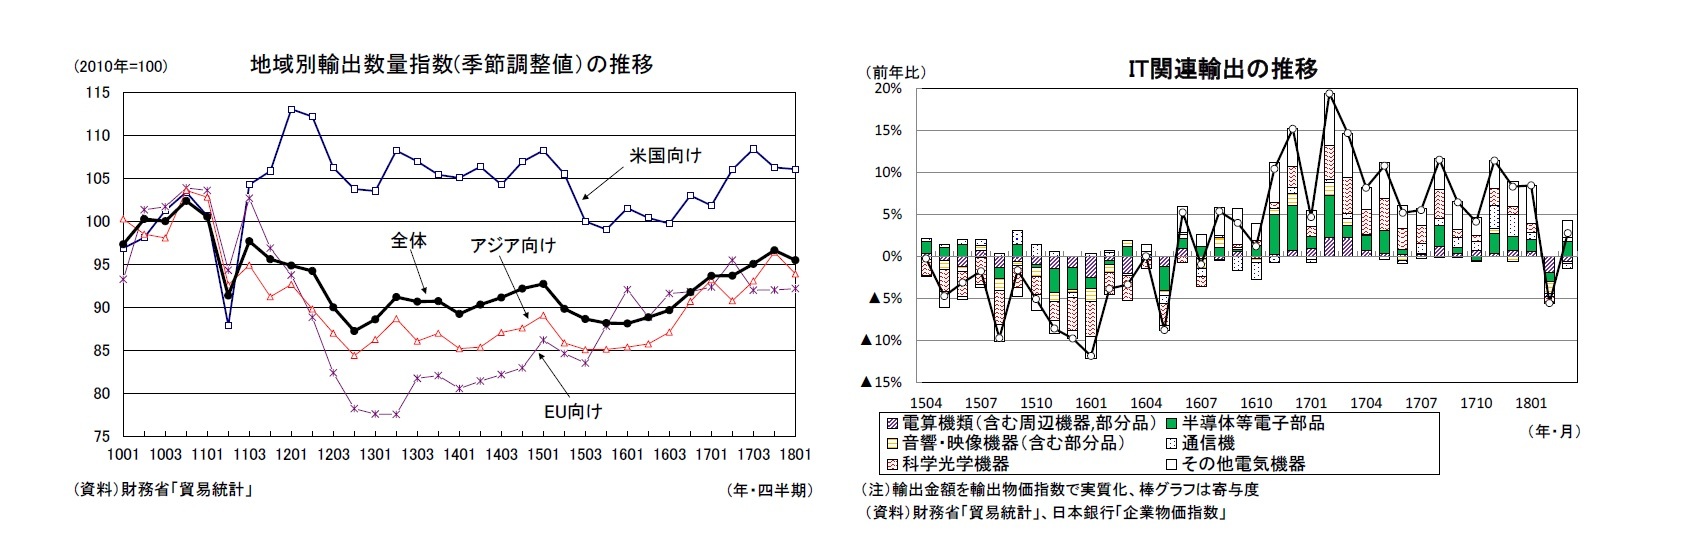 地域別輸出数量指数(季節調整値）の推移/IT関連輸出の推移